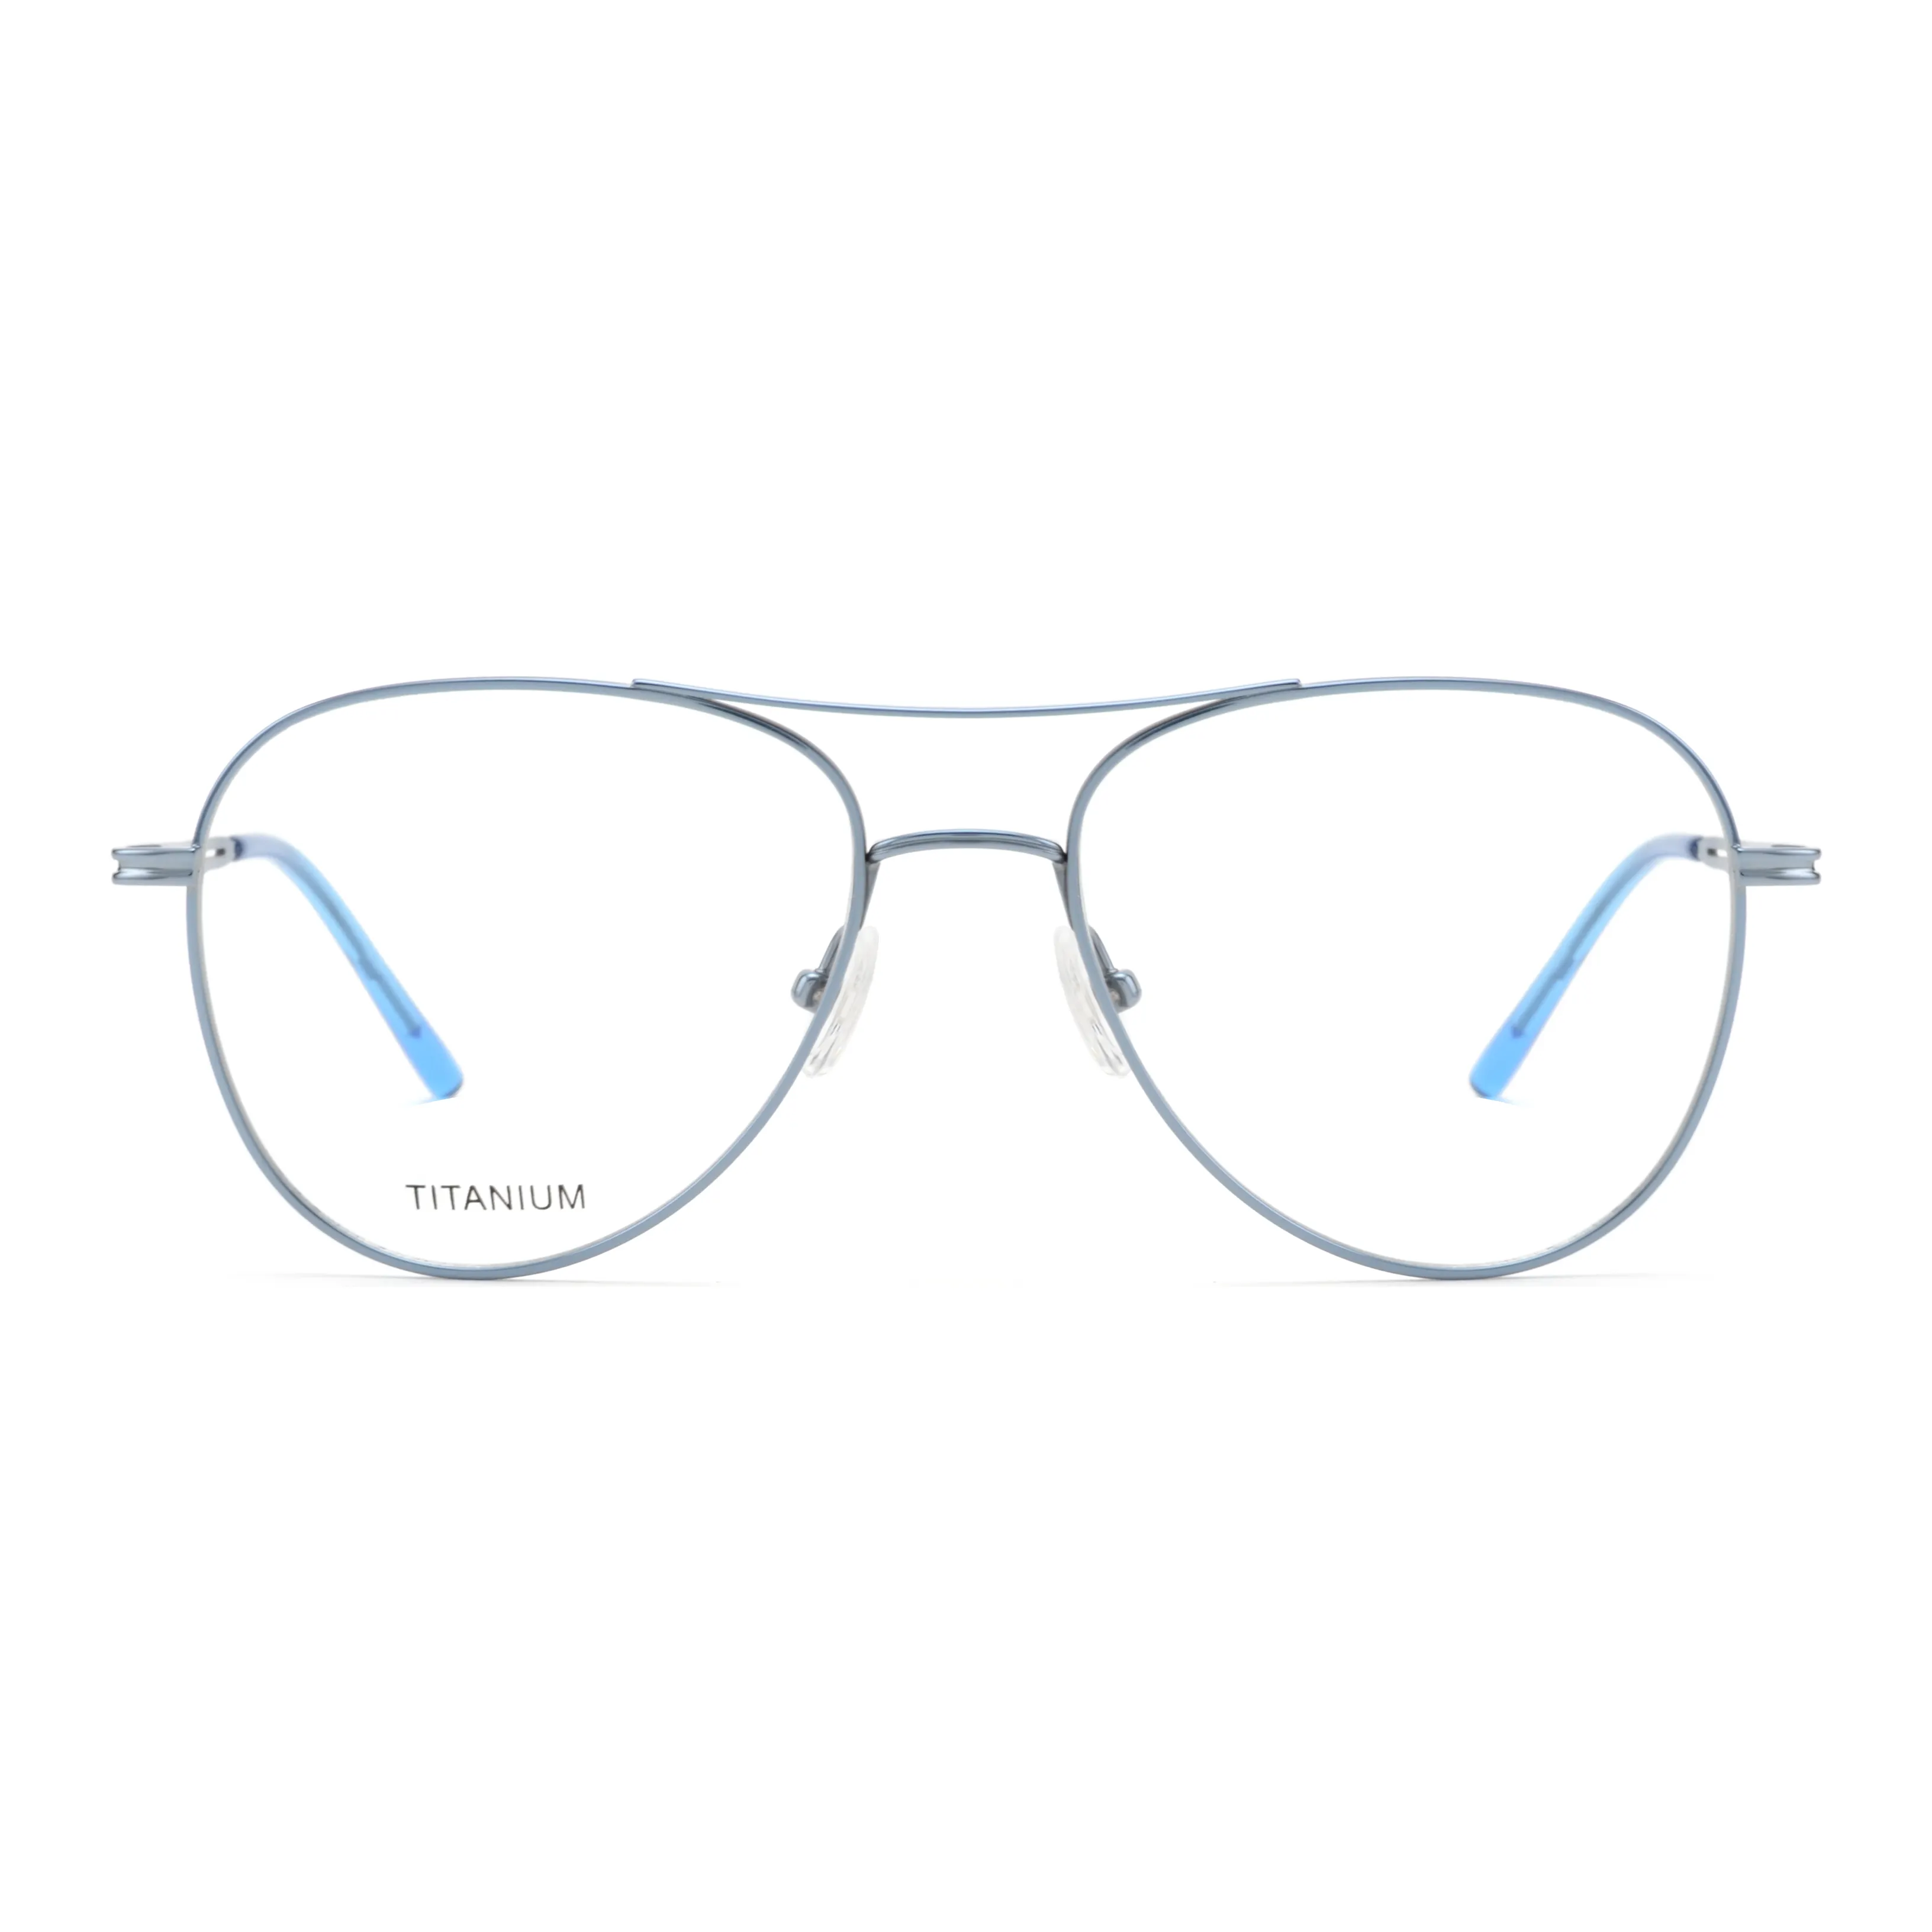 2023 classic man glasses double bridges custom made eyeglasses medium size eye glasses frames for men